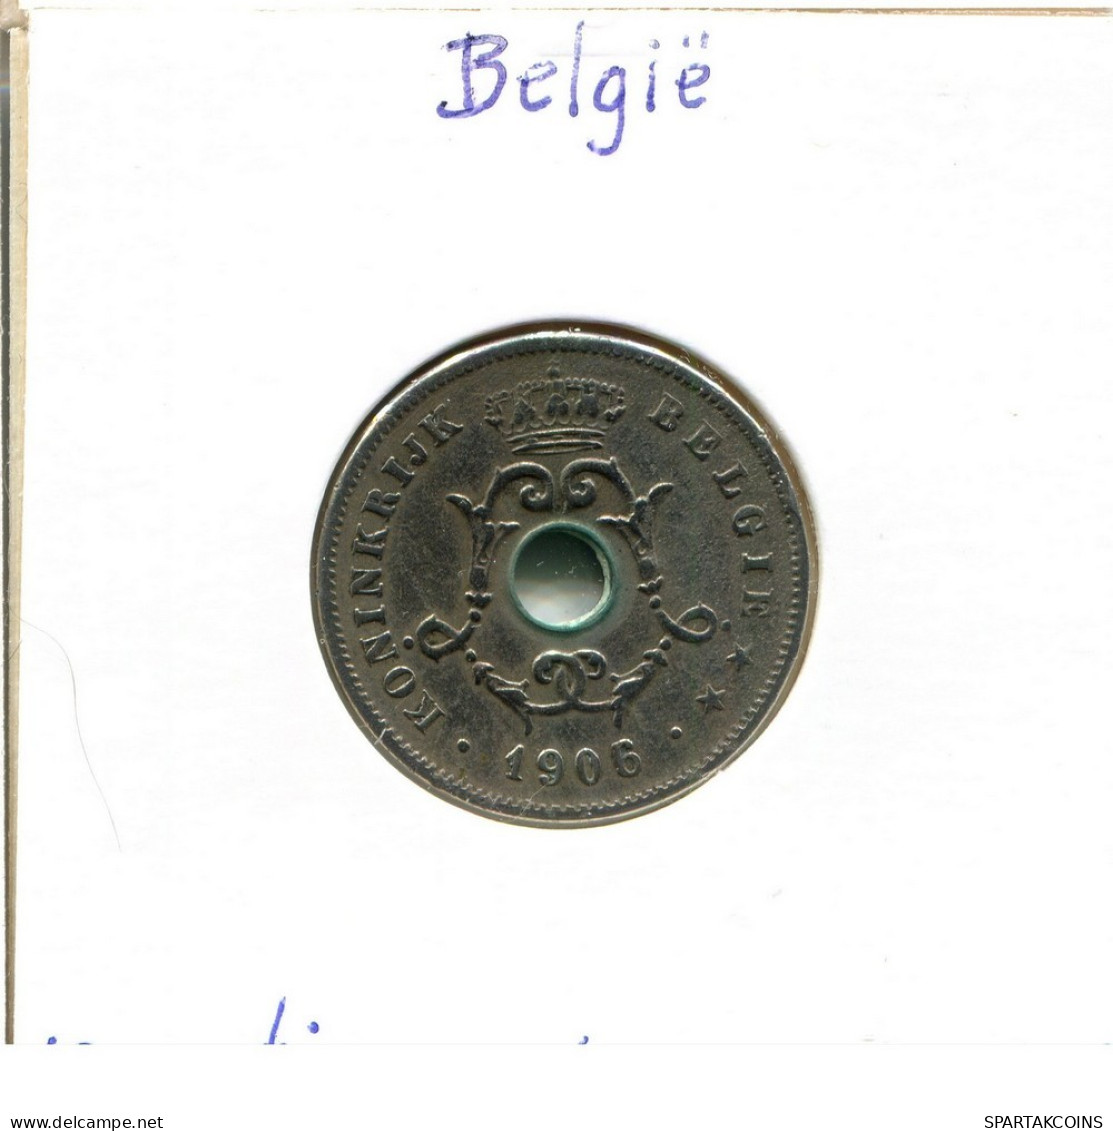 10 CENTIMES 1906 DUTCH Text BÉLGICA BELGIUM Moneda #BA280.E.A - 10 Cent